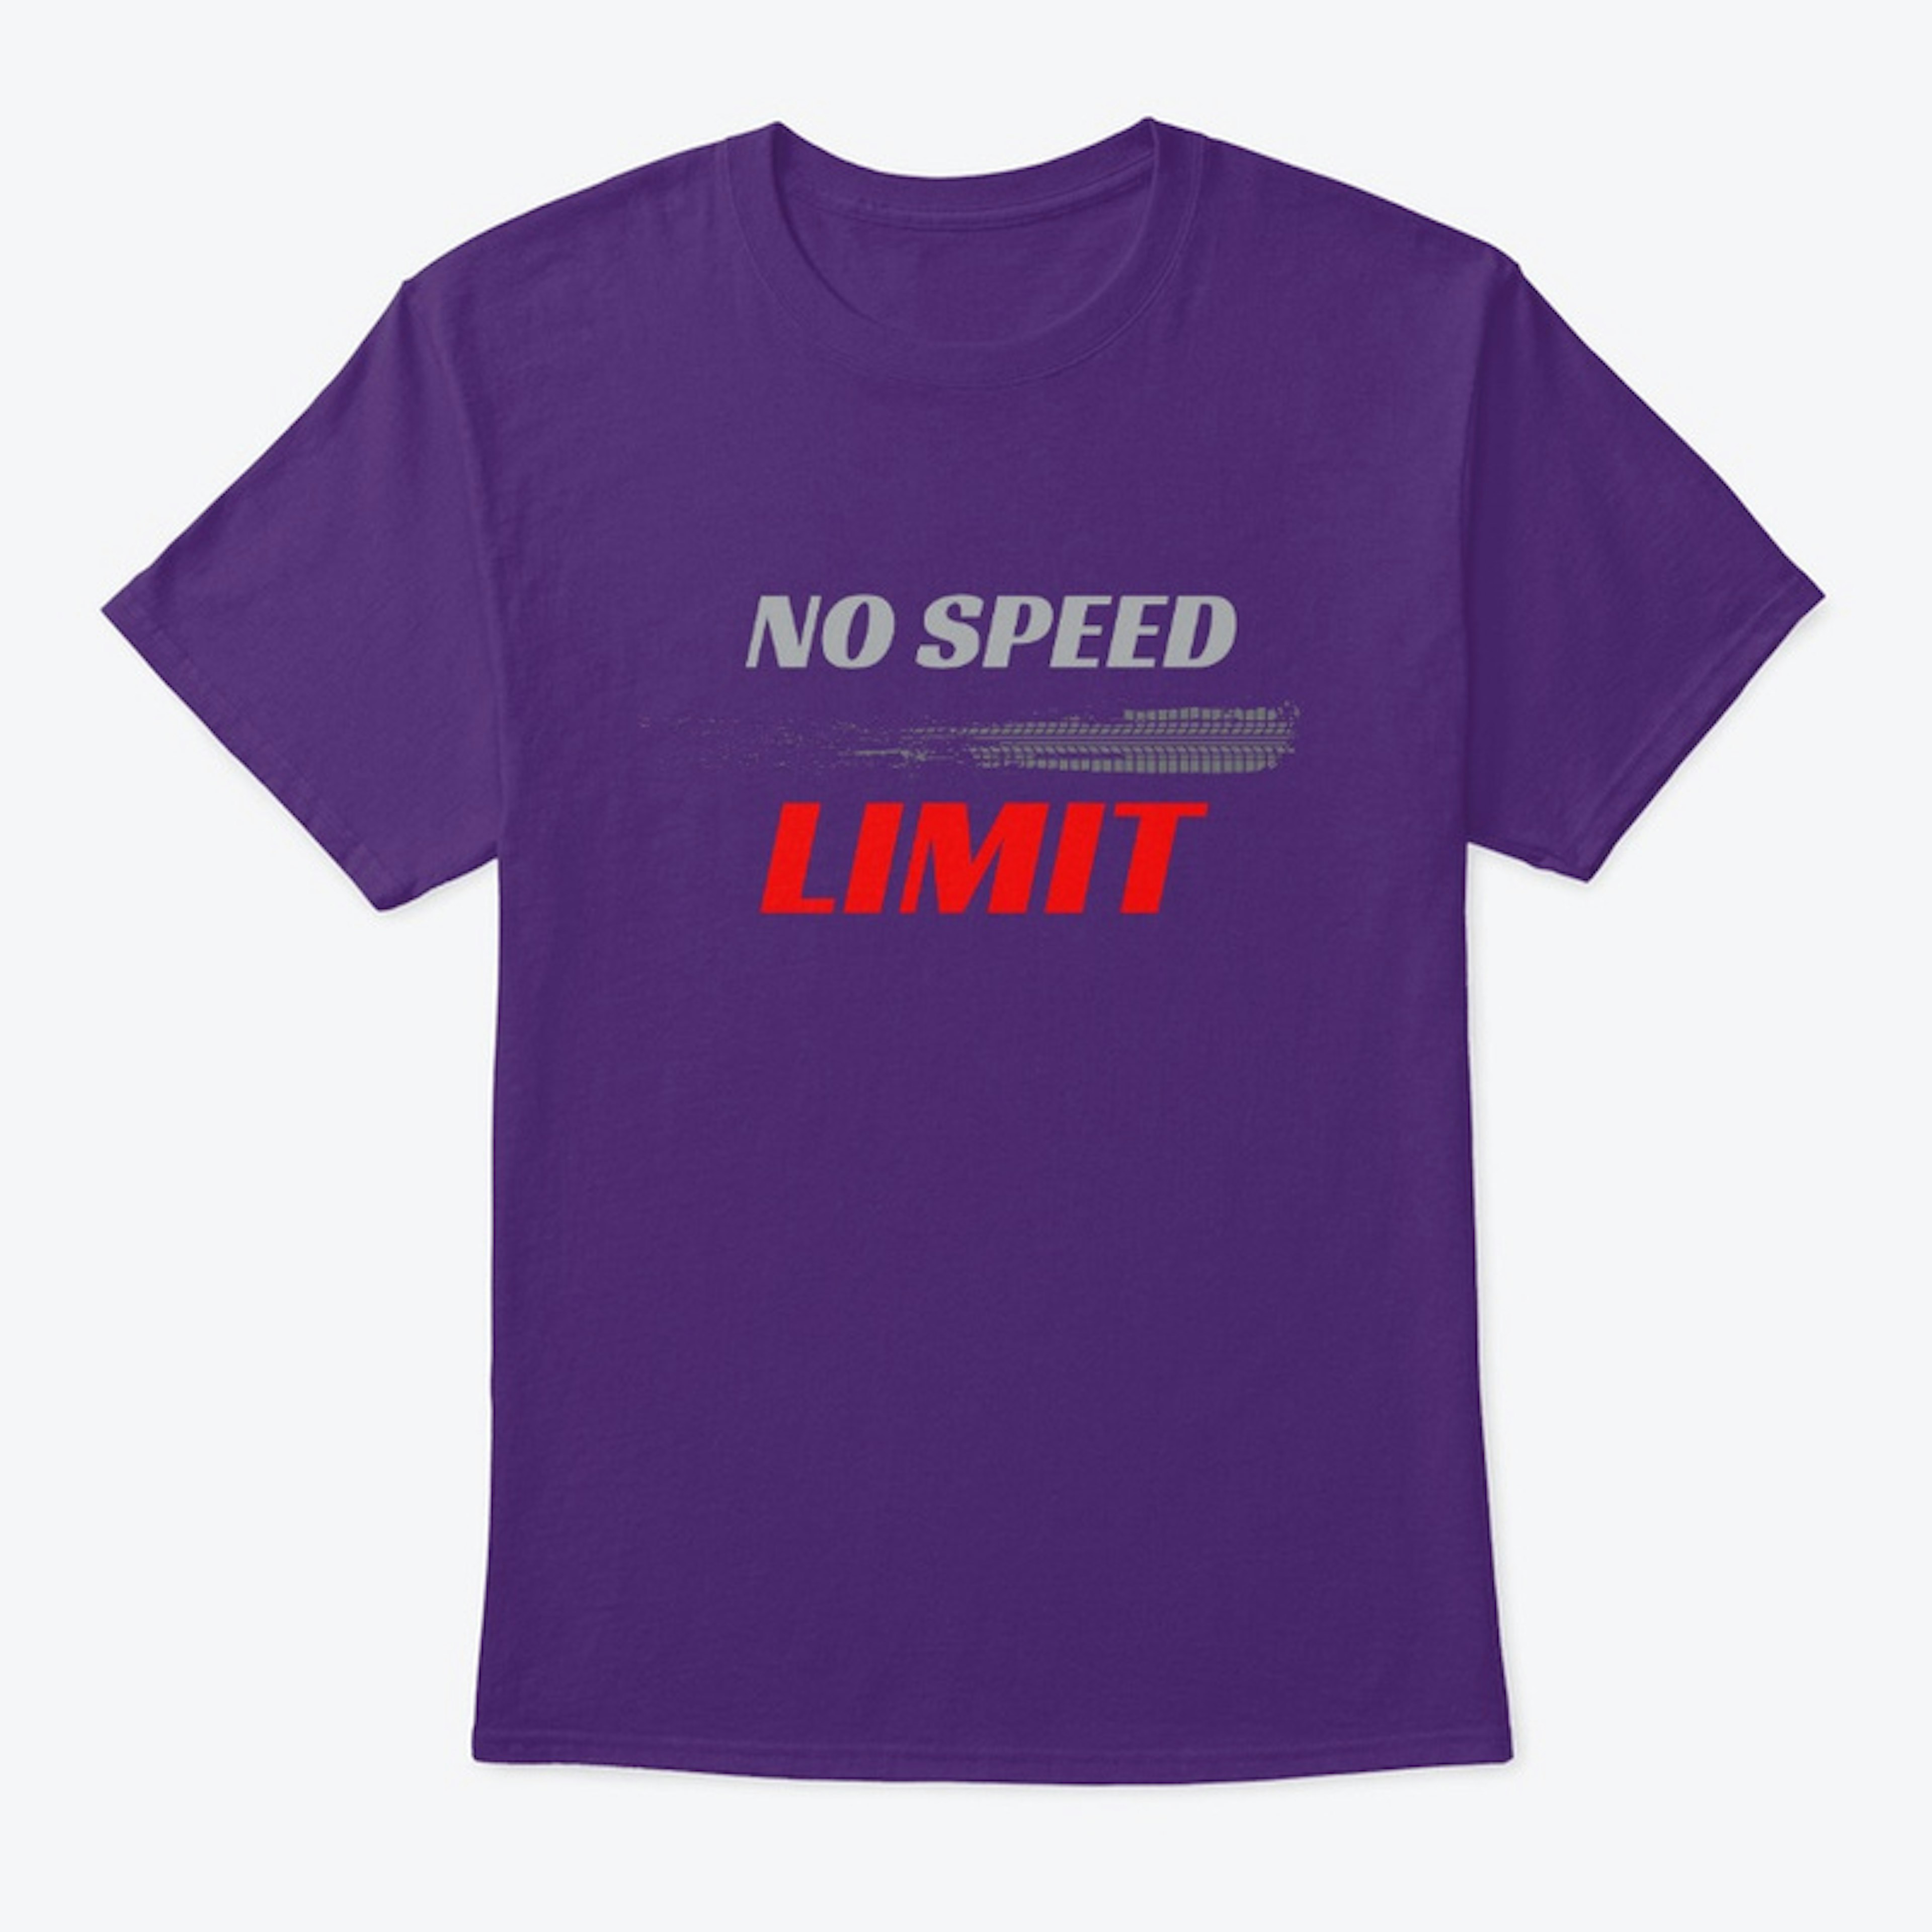 No speed limit